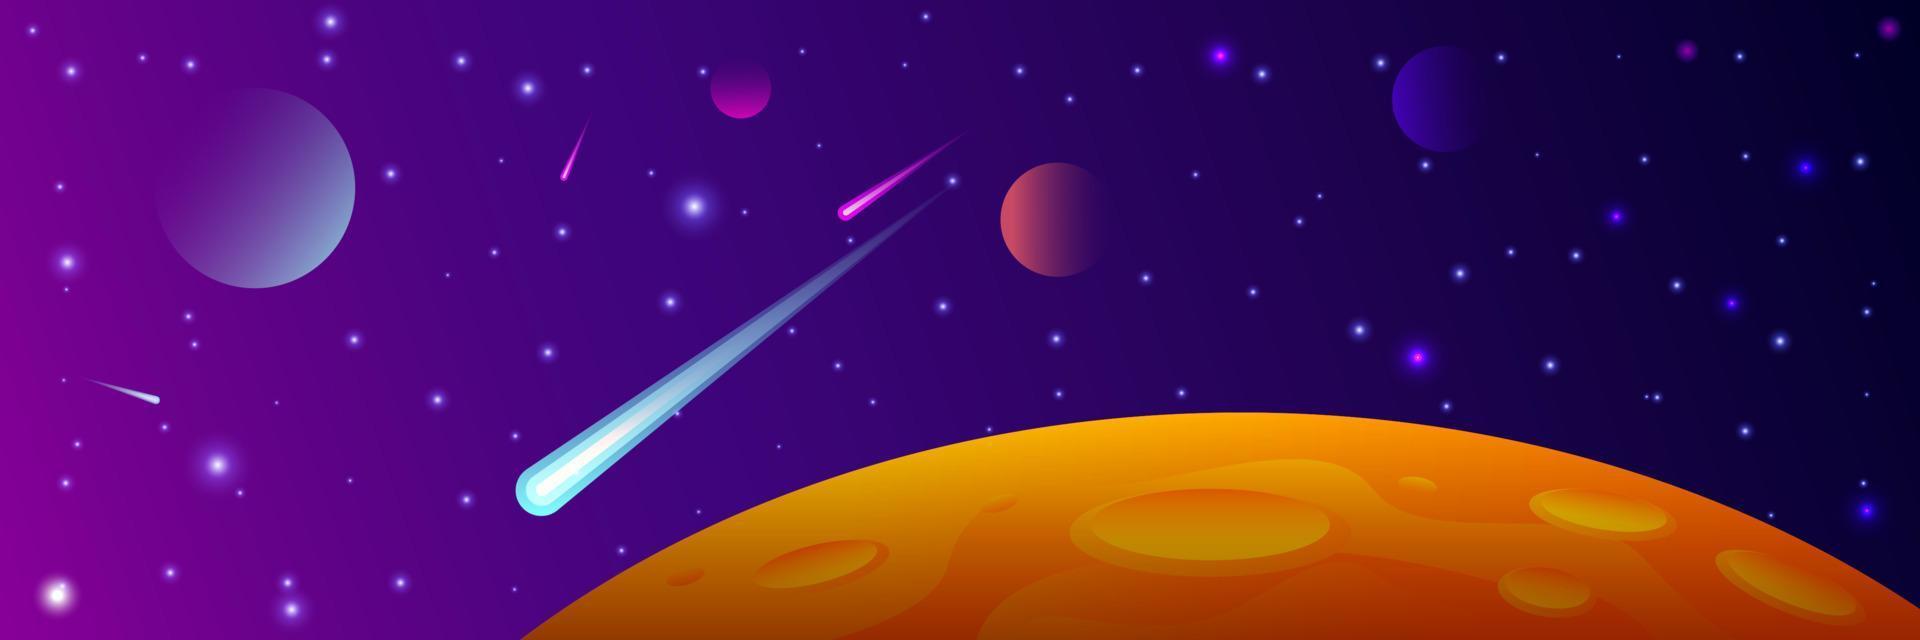 stor röd planet med kratrar. fördärvar vektor illustration. Plats bakgrund med stjärnor, planet och kometer. dekoration för din design. eps 10.